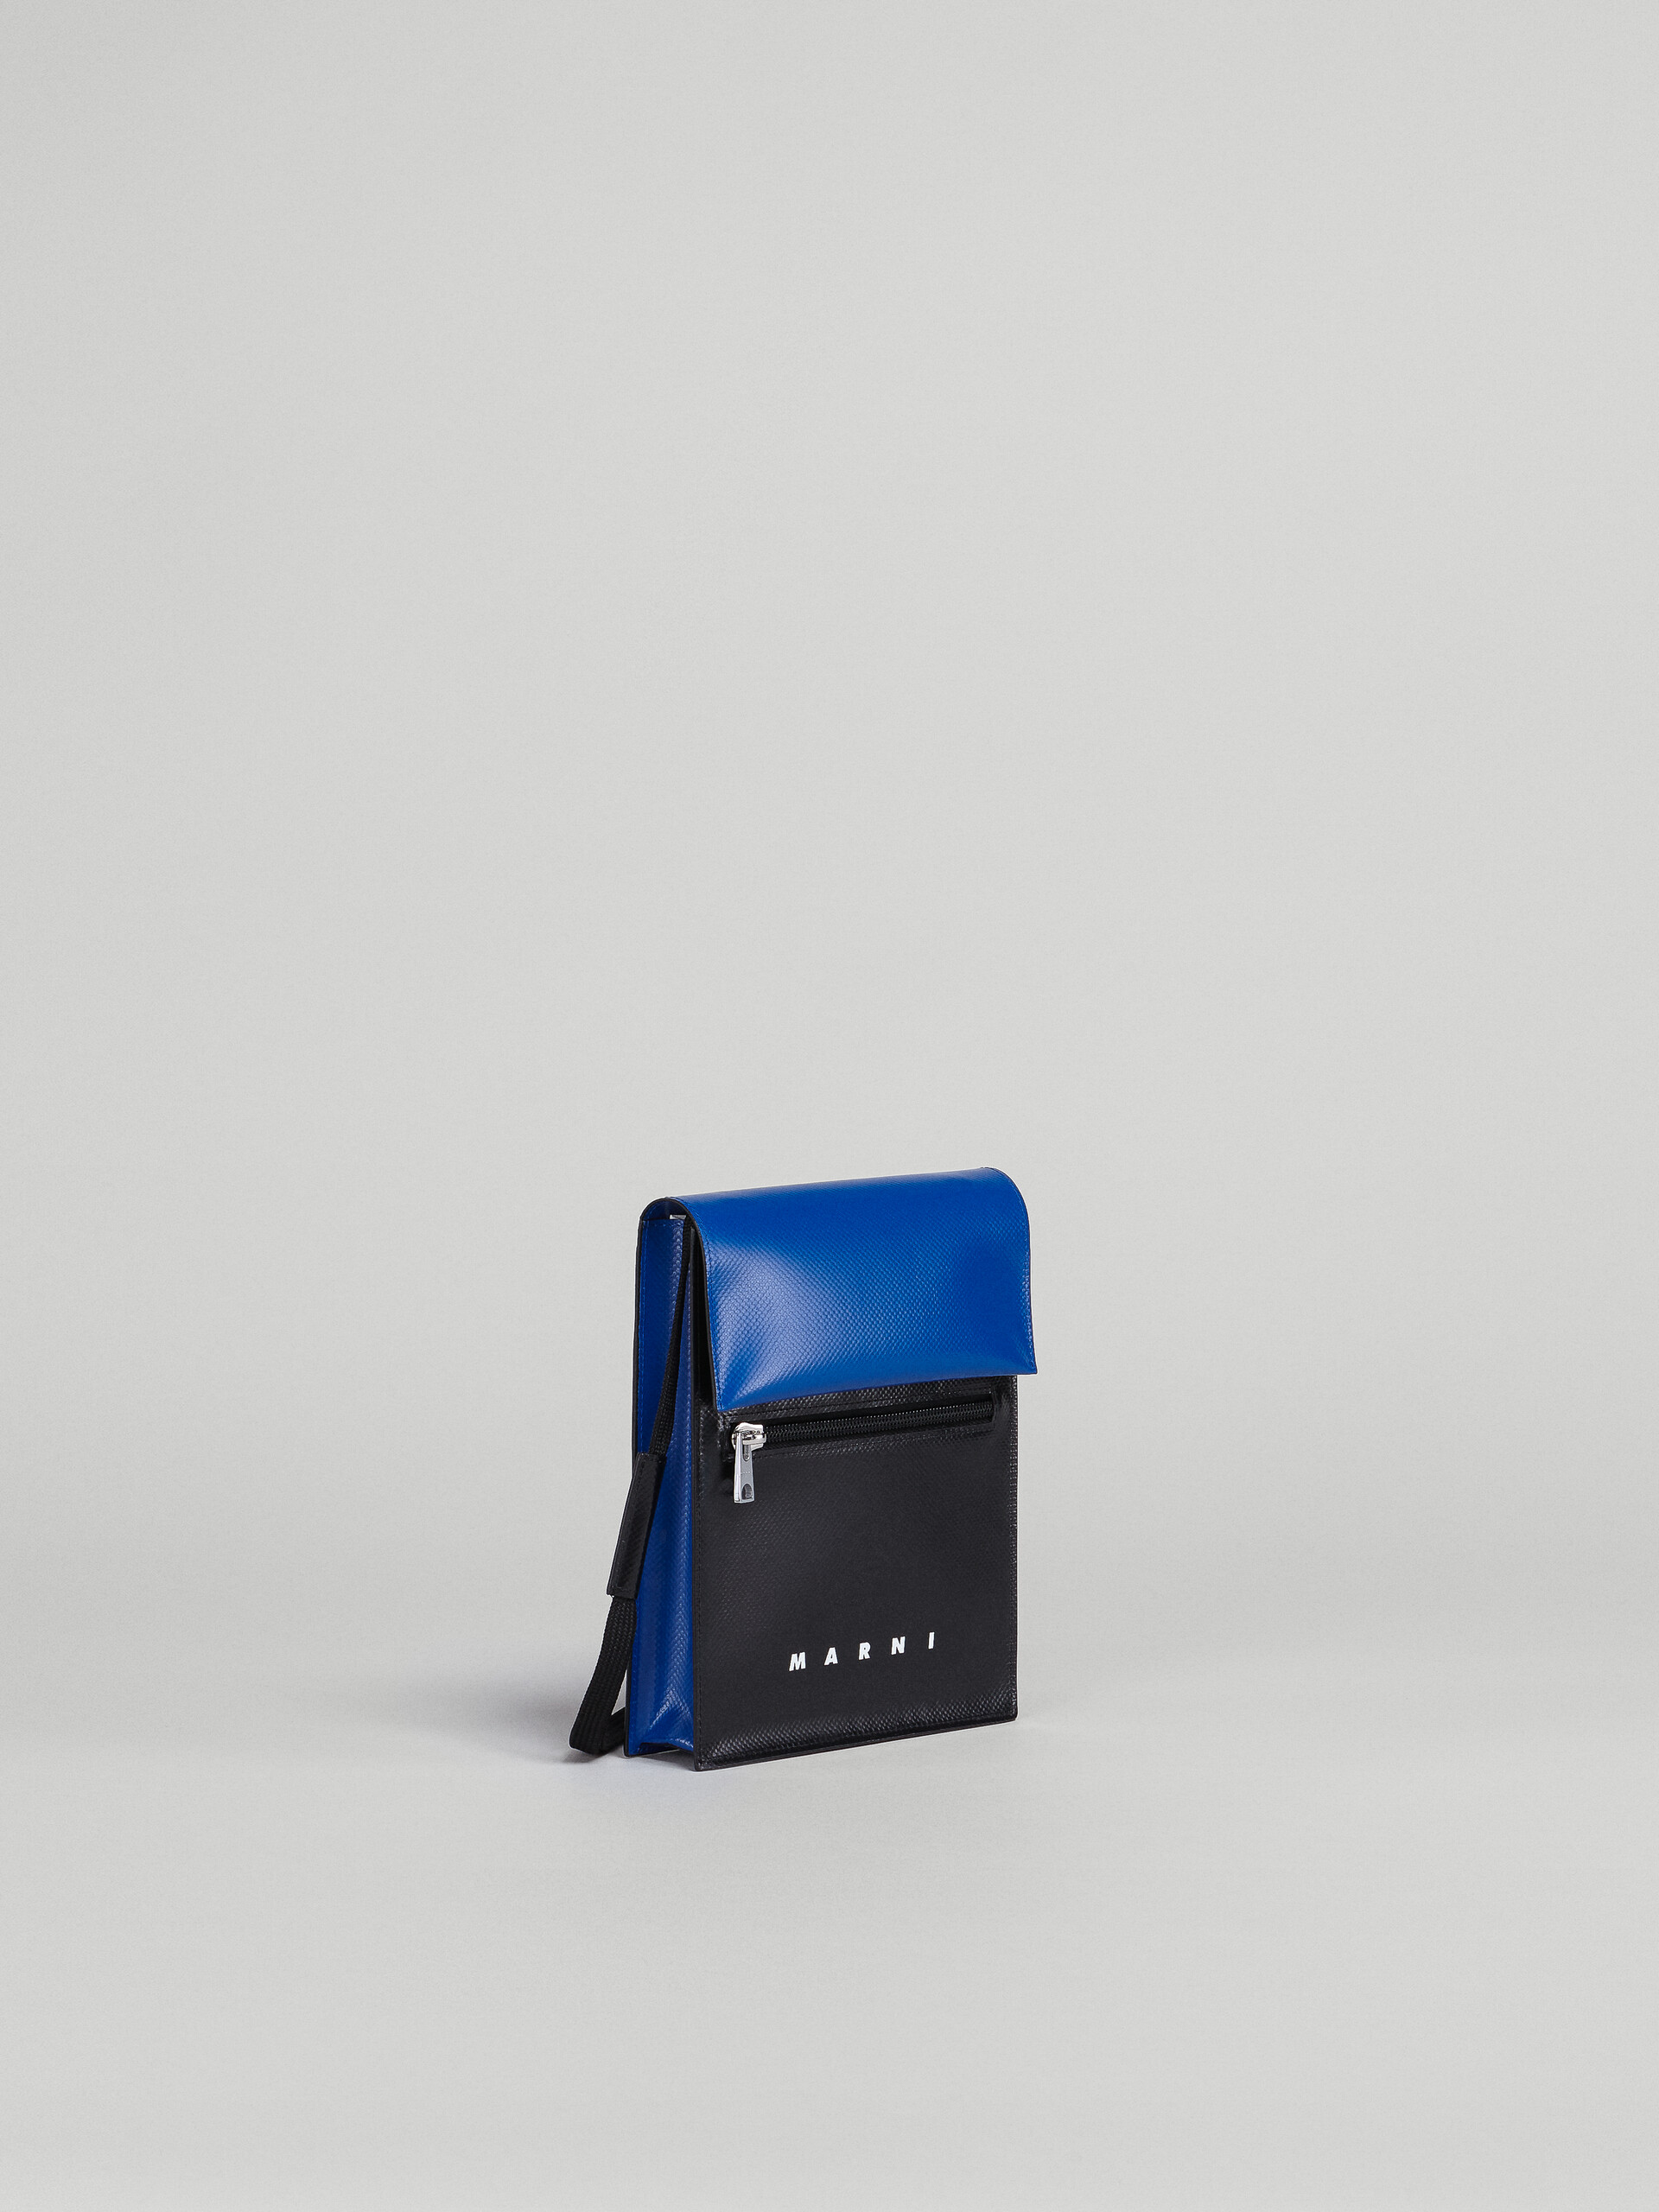 Black and blue PVC TRIBECA messenger bag - Shoulder Bag - Image 5